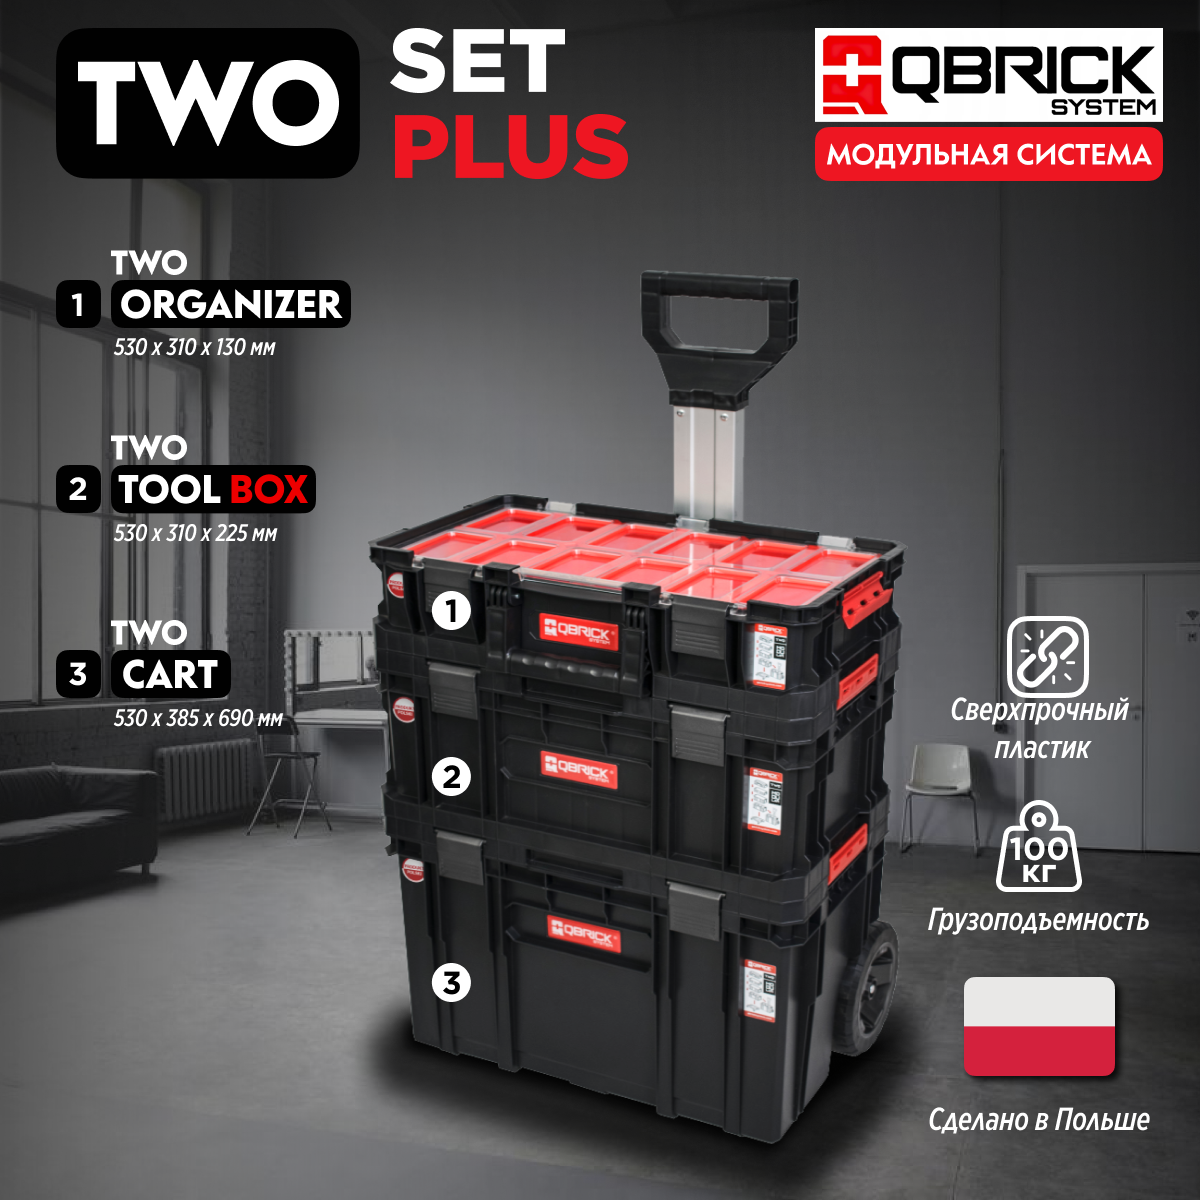 Набор ящиков для инструментов Qbrick System TWO Set Plus 1-Z251248PG001 набор инструментов jiuxun tools 12 in 1 toolbox set